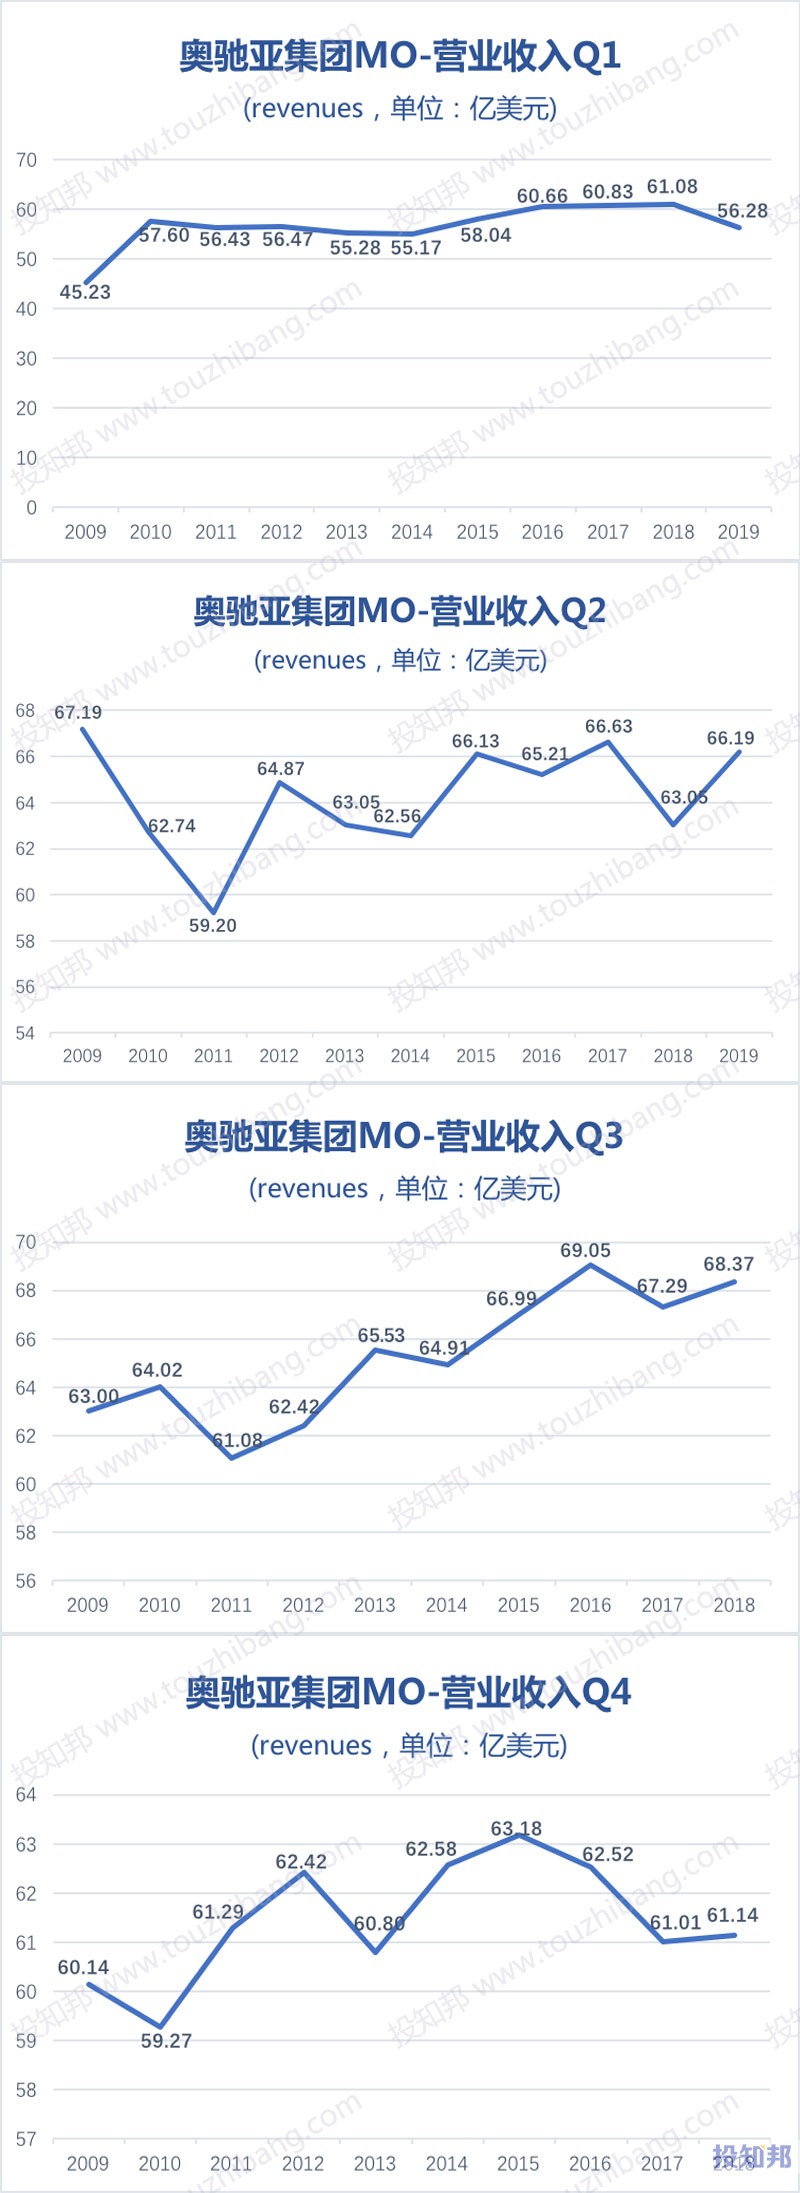 图解奥驰亚集团(MO)财报数据(2009年～2019年Q2)